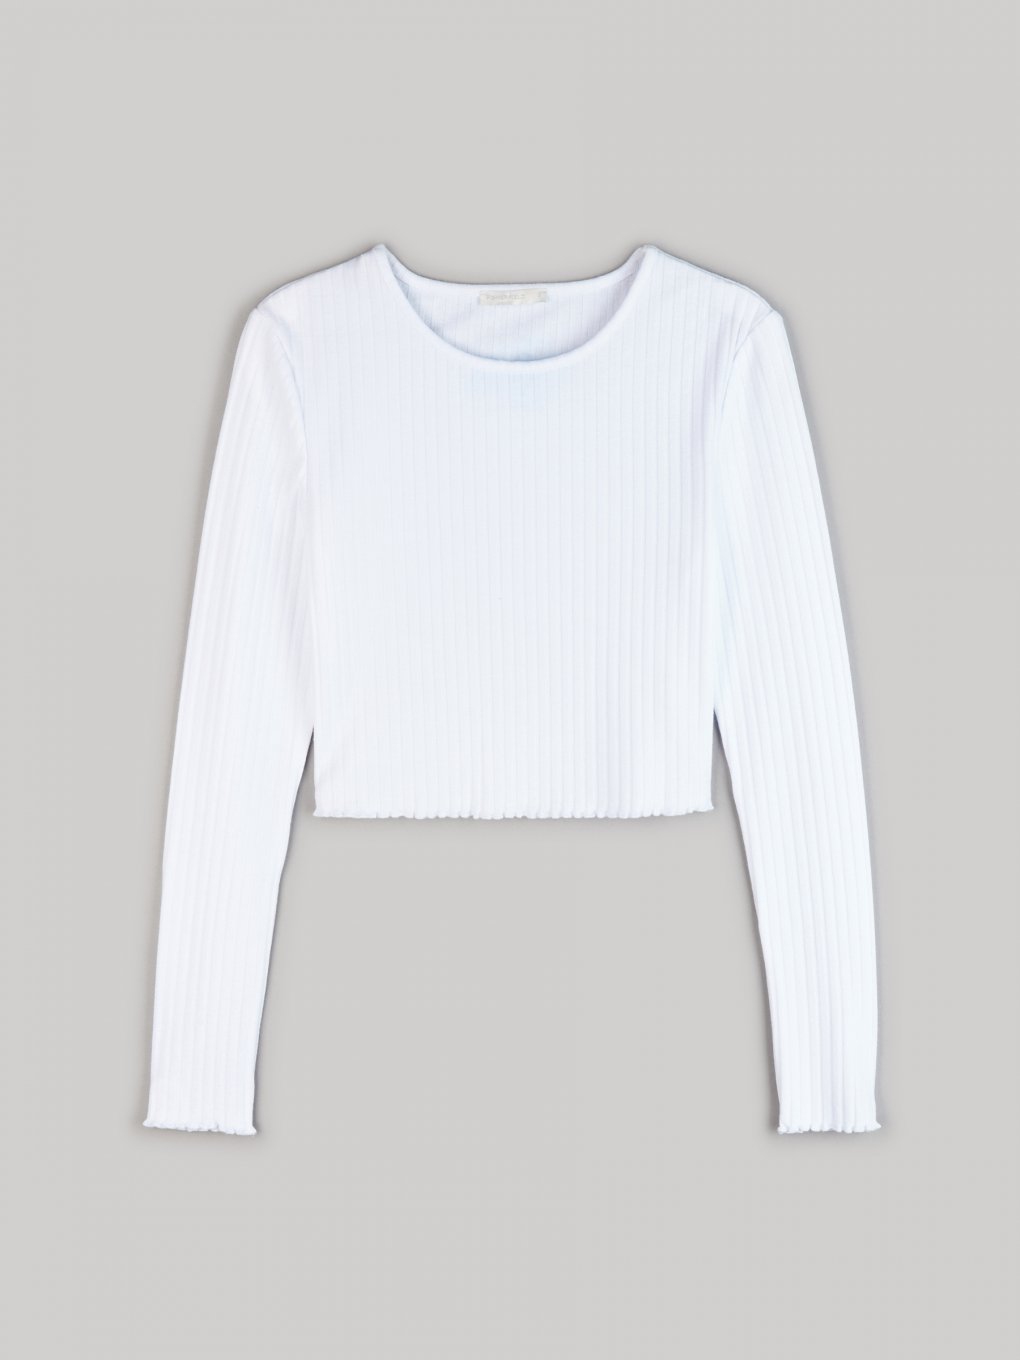 WOMEN FASHION Shirts & T-shirts Ribbed Zara crop top White M discount 53% 